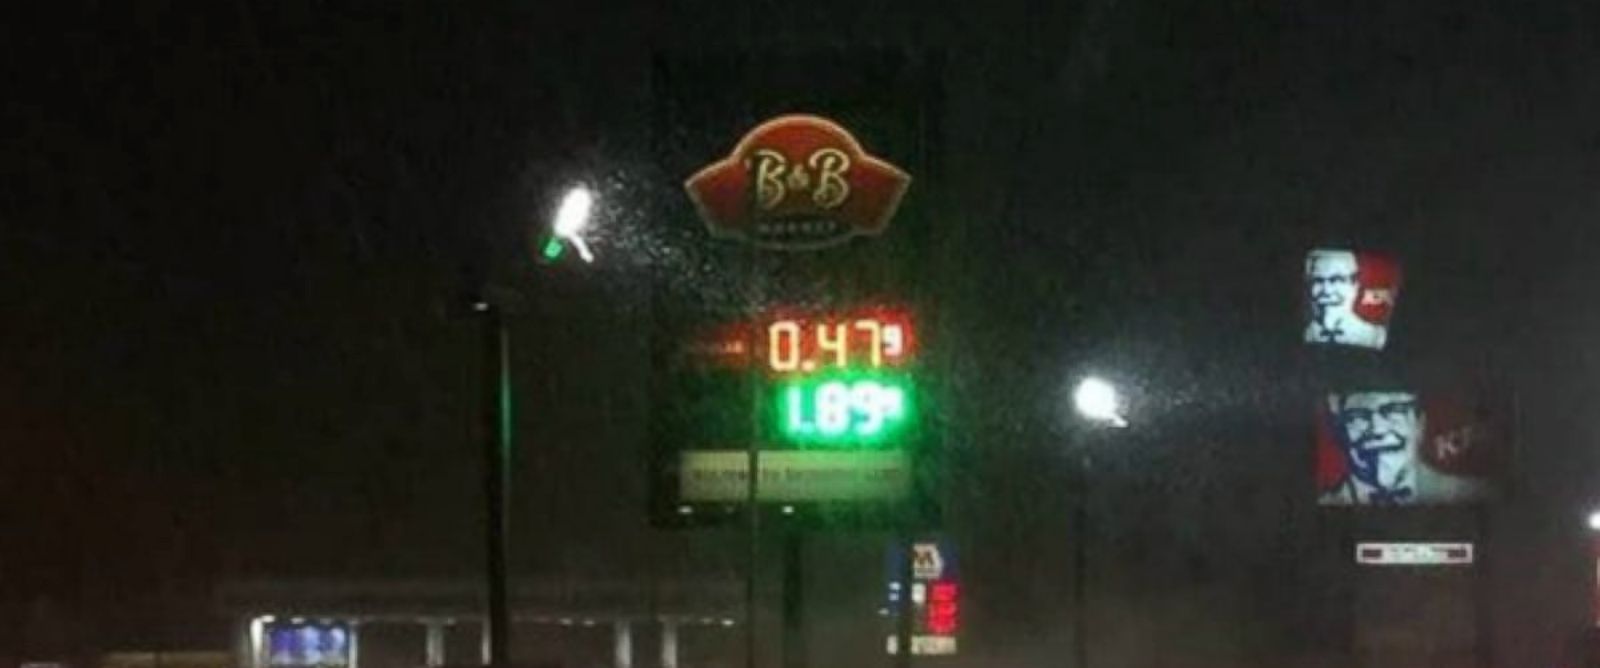 PHOTO:Beacon & Bridge Markets sign shows gas at $.47 per gallon in Michigan.